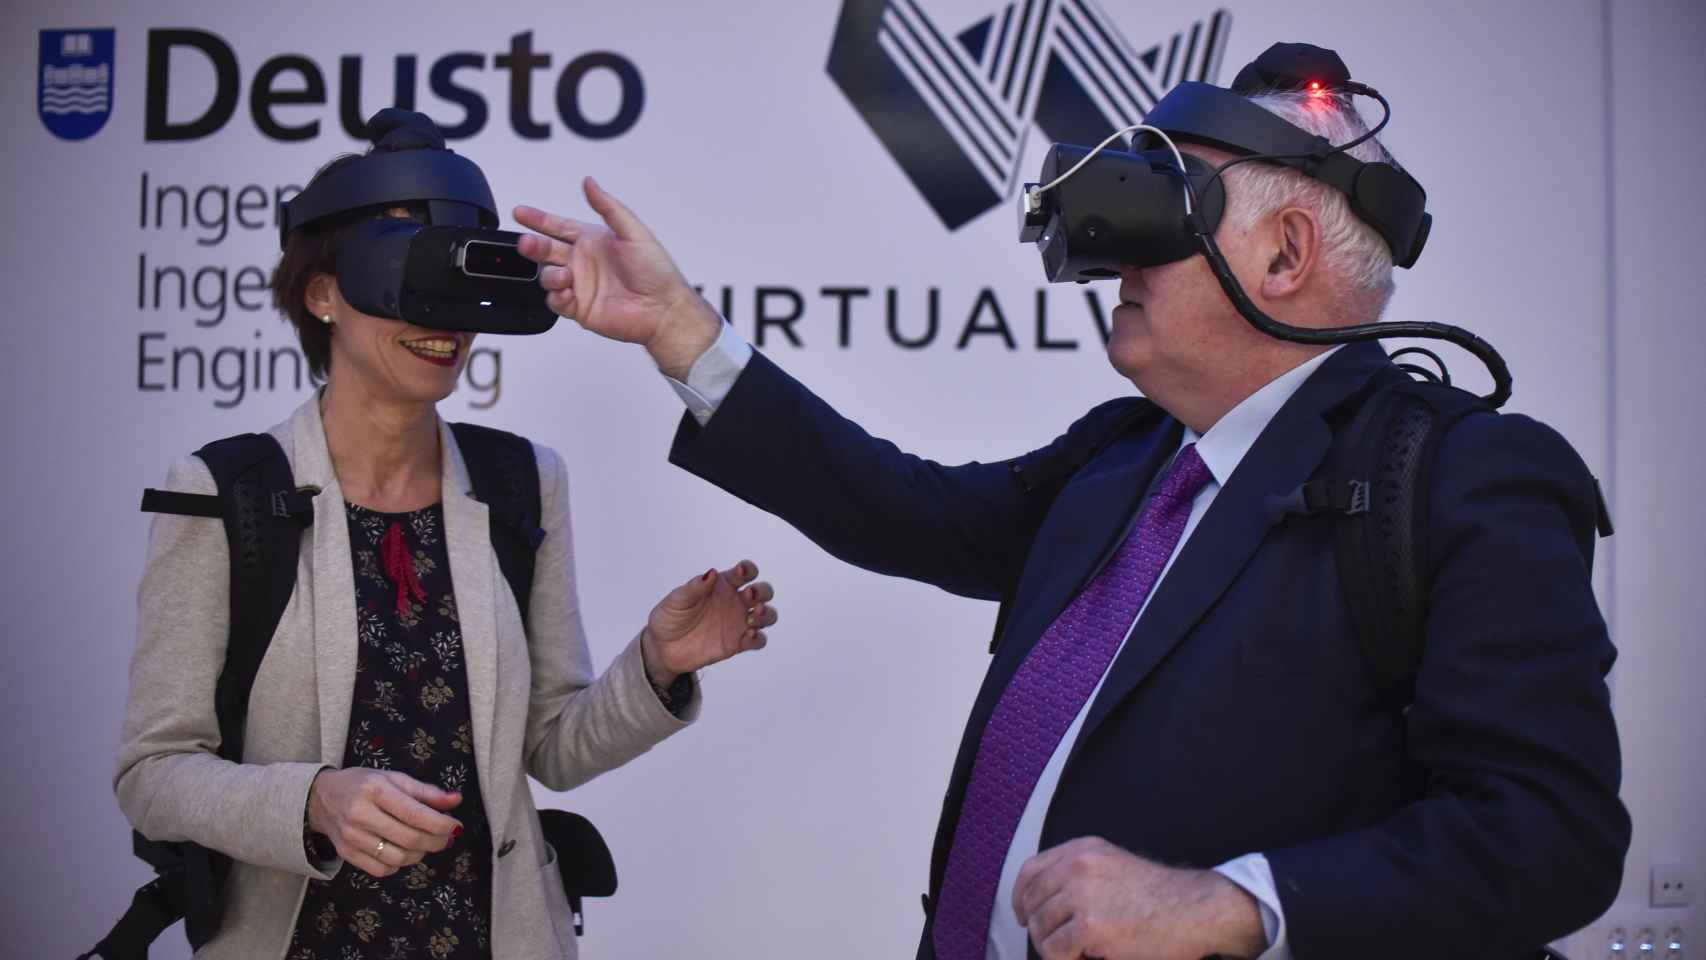 Laboratorio de realidad virtual de Virtualware.